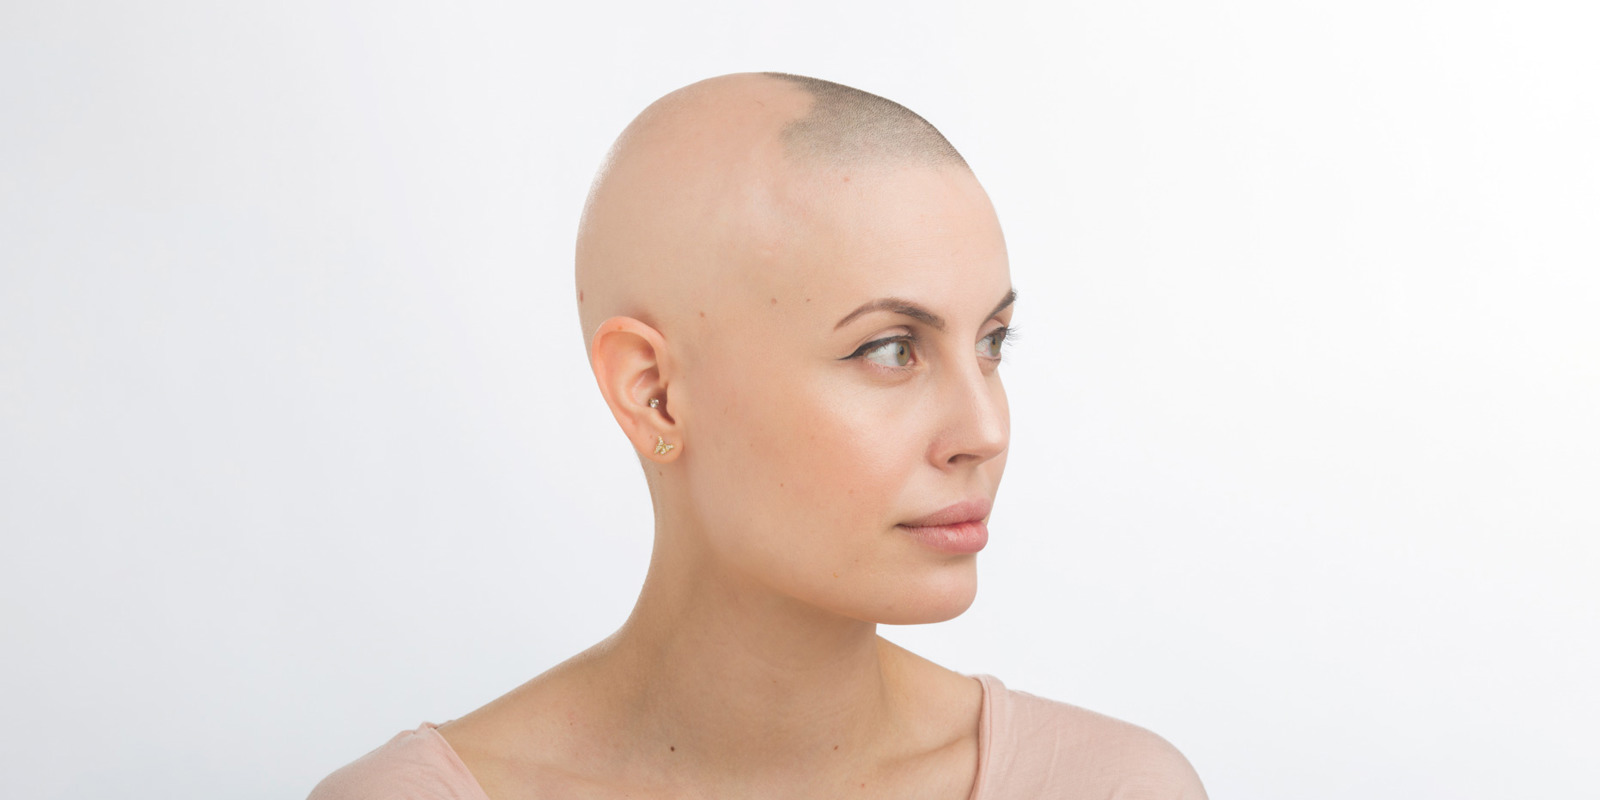 Julia har mistet håret på grunn av hudsykdommen alopeci